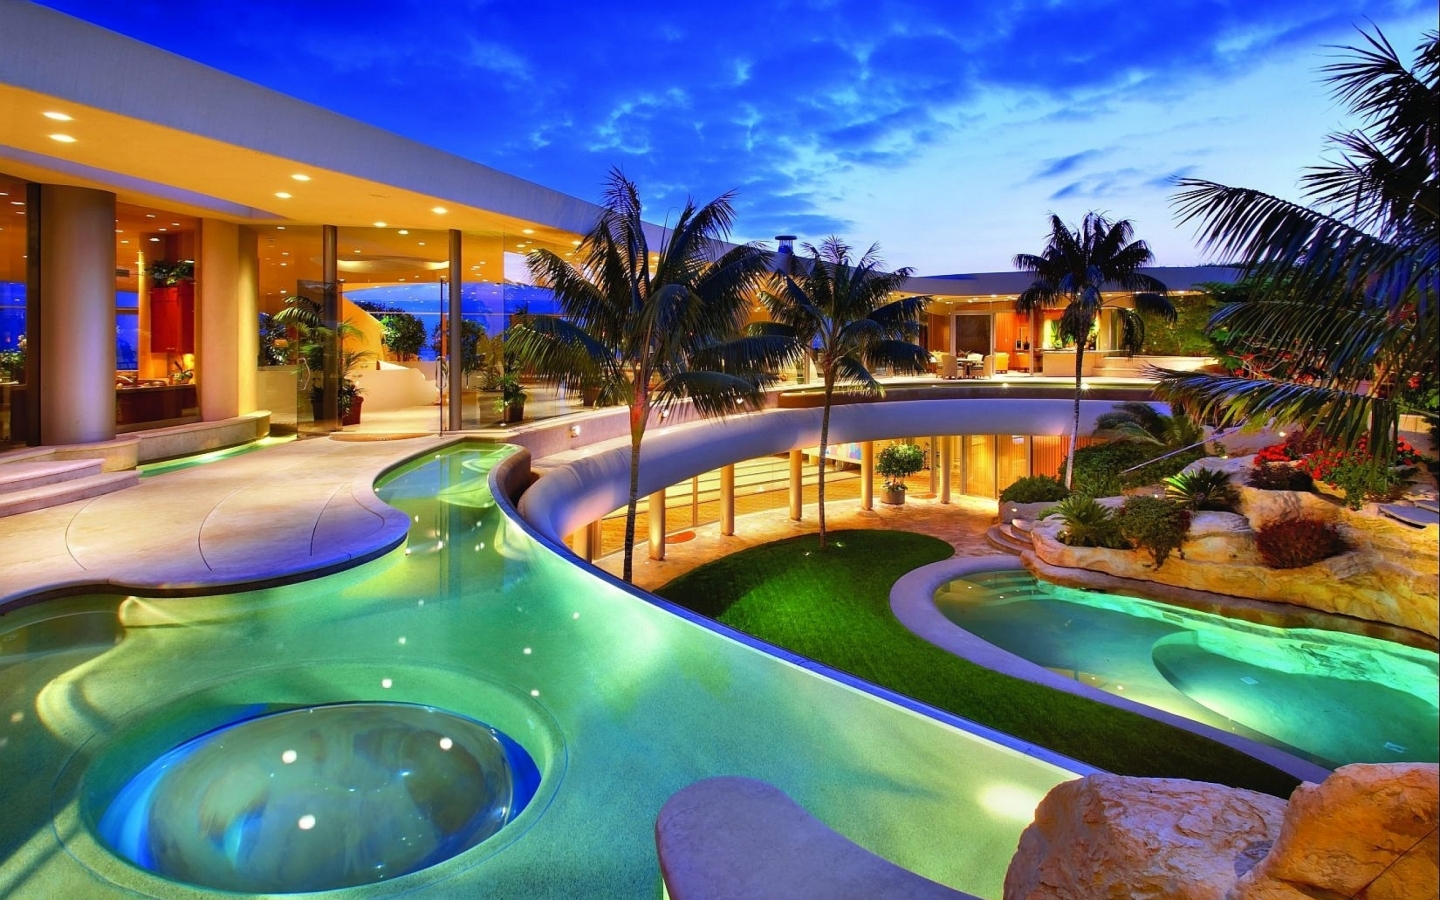 Stunning Beach Resort for 1440 x 900 widescreen resolution